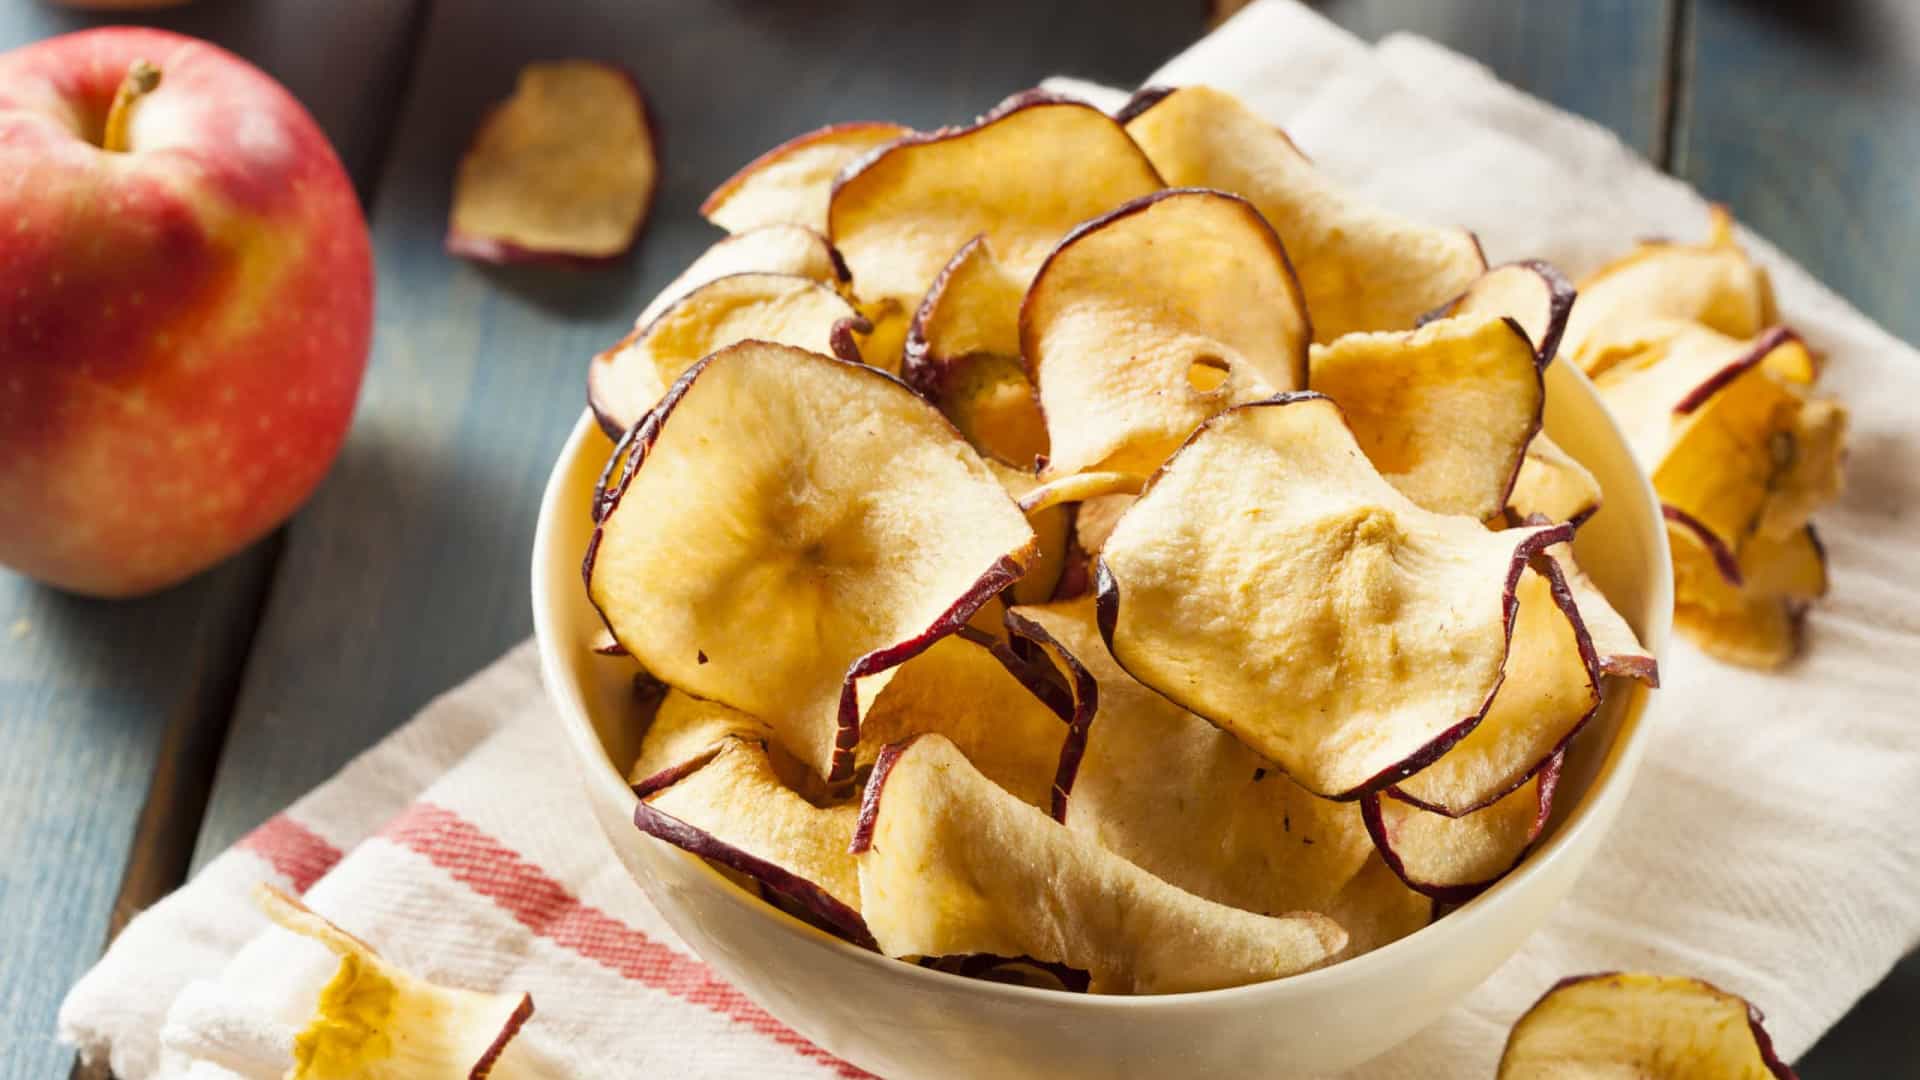 Chips de maçã: O snack saudável que faltava na sua vida